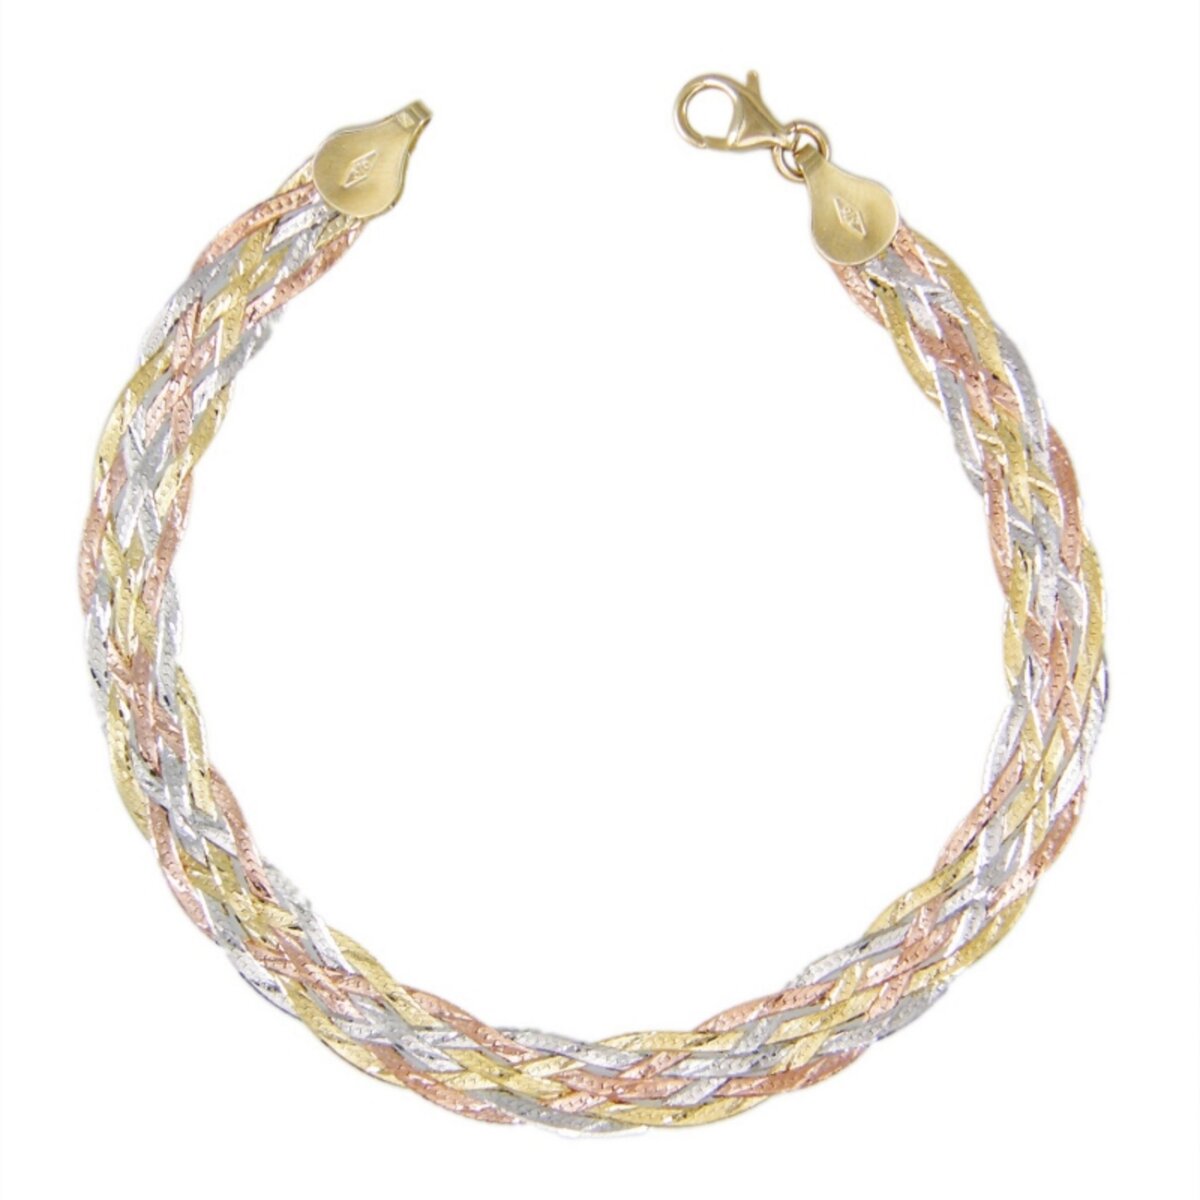 L'ATELIER D'AZUR Bracelet Tresse  Trois Ors  - Or Tricolore Jaune, Blanc et Rose - Femme